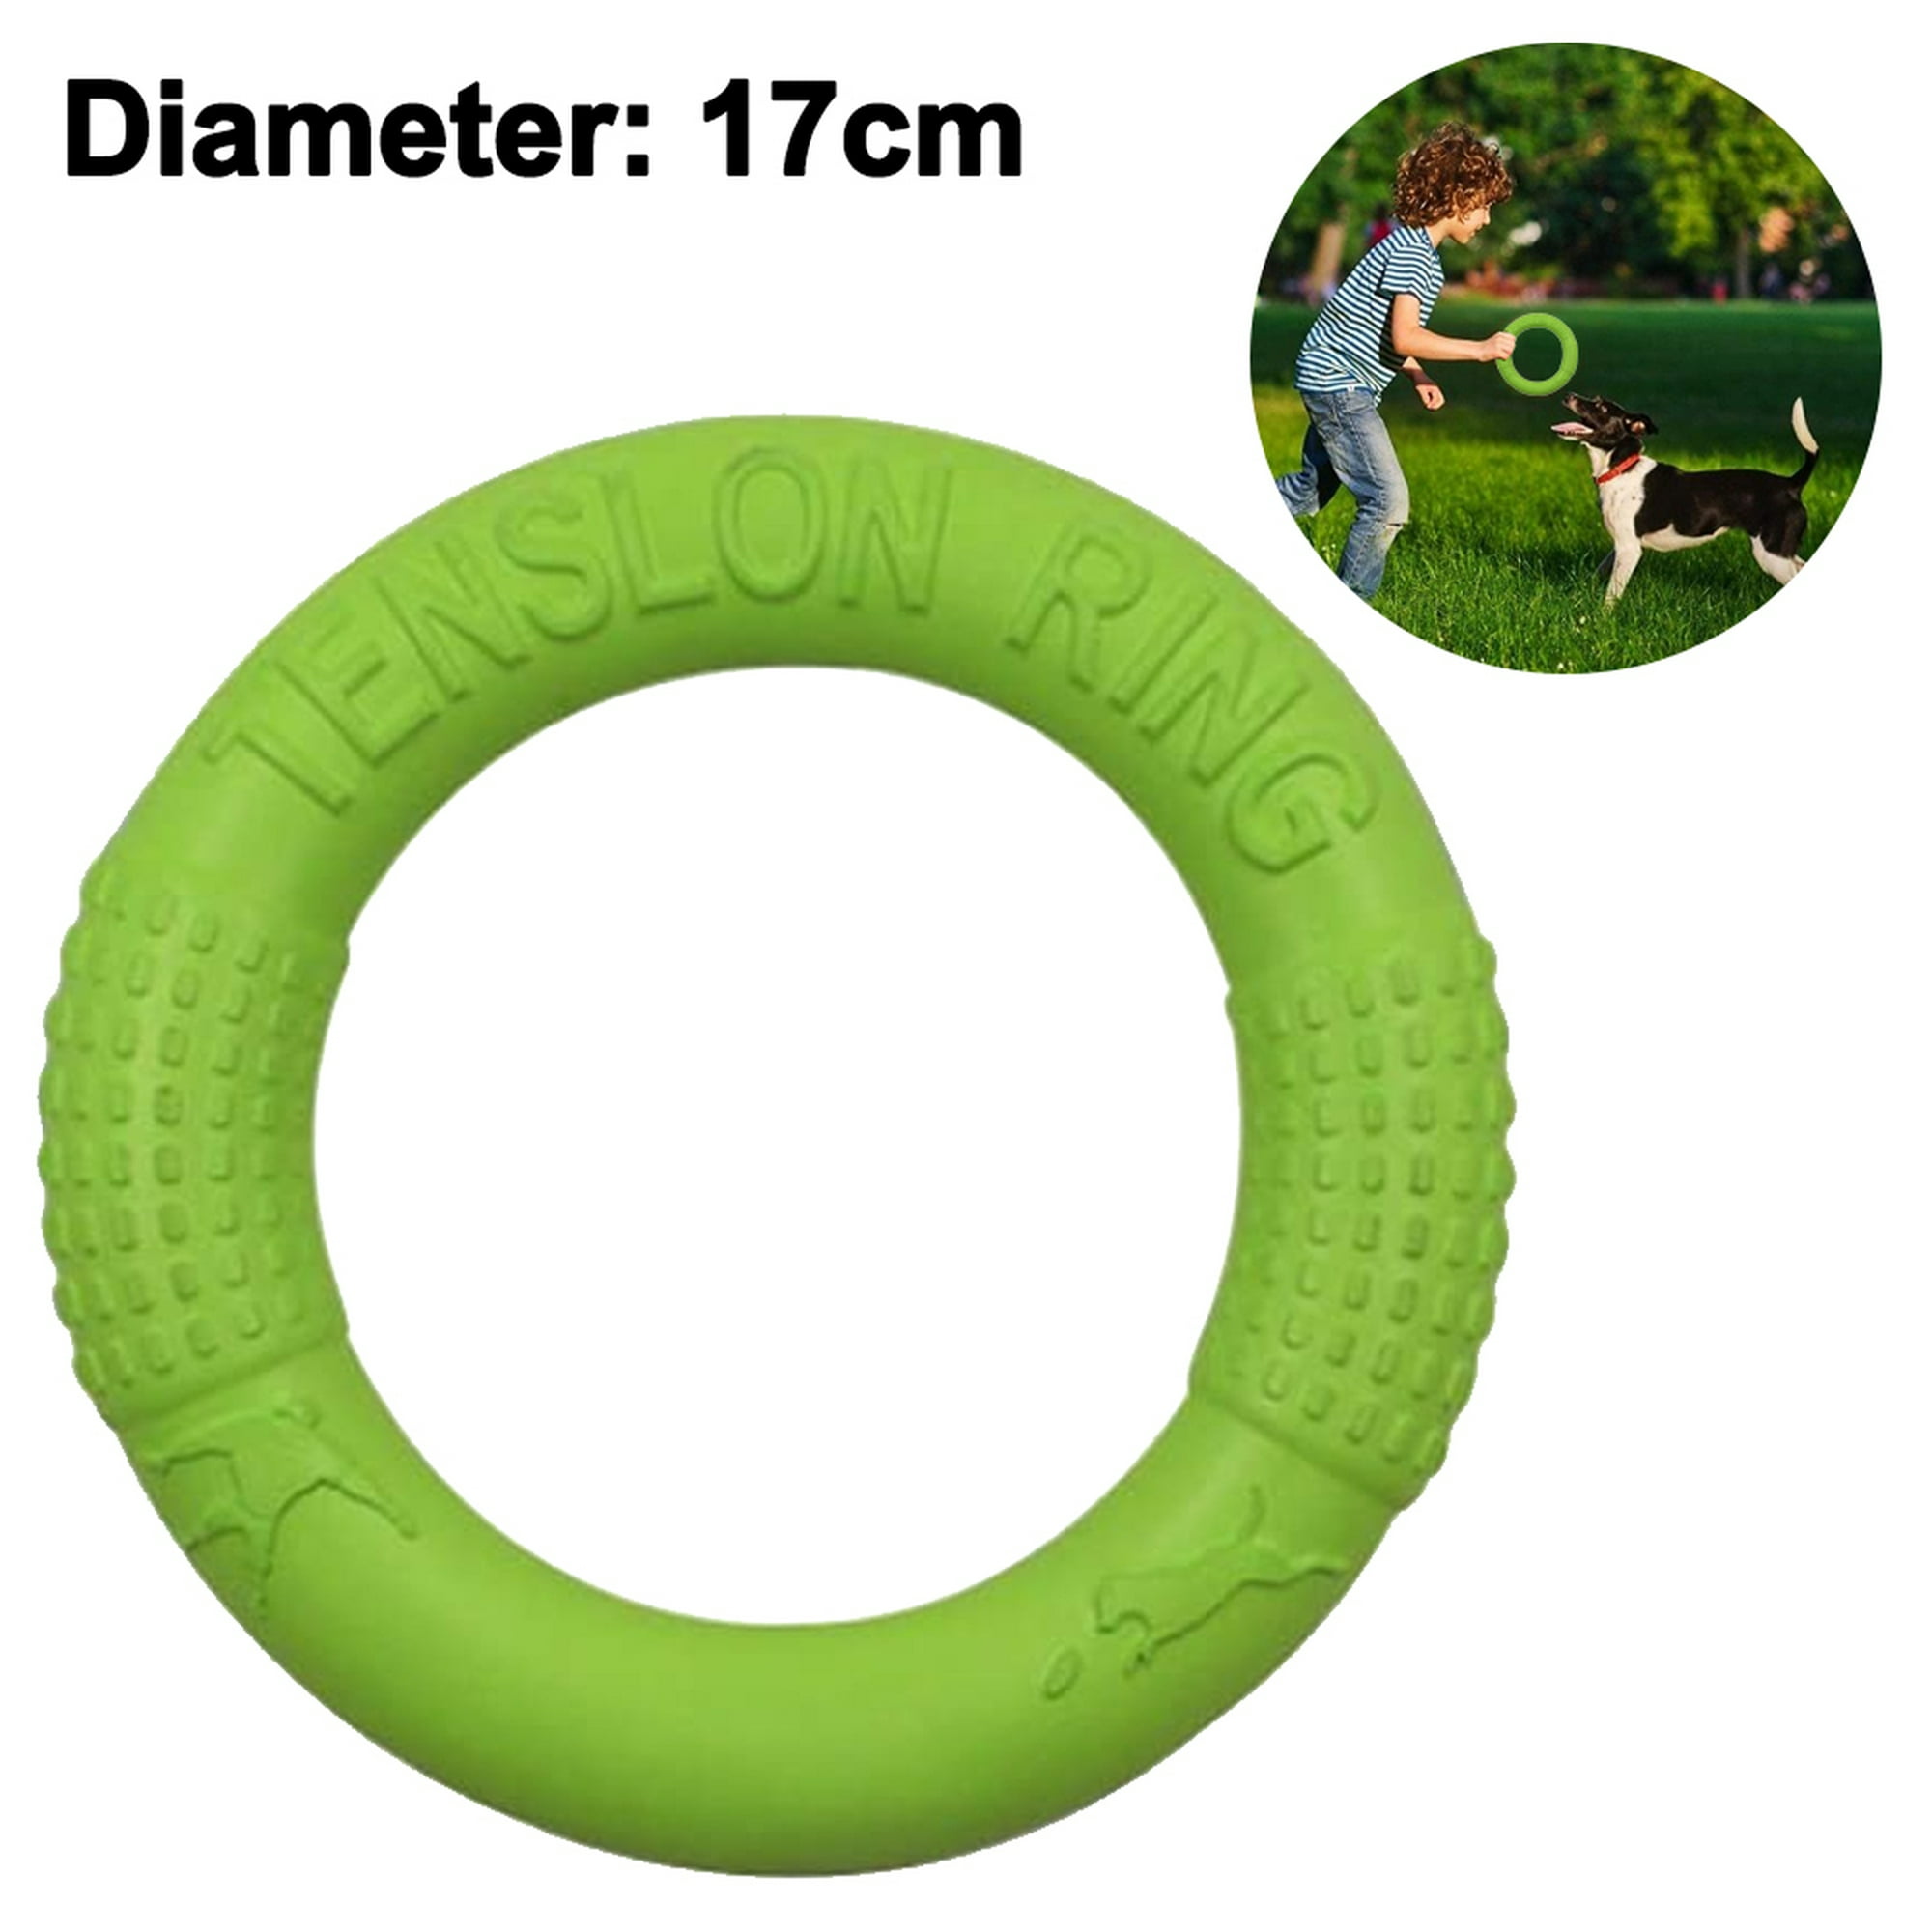 Frisbee Flexible para Perros desde 0.48 € - ¡Compra Ya! 🐕✨